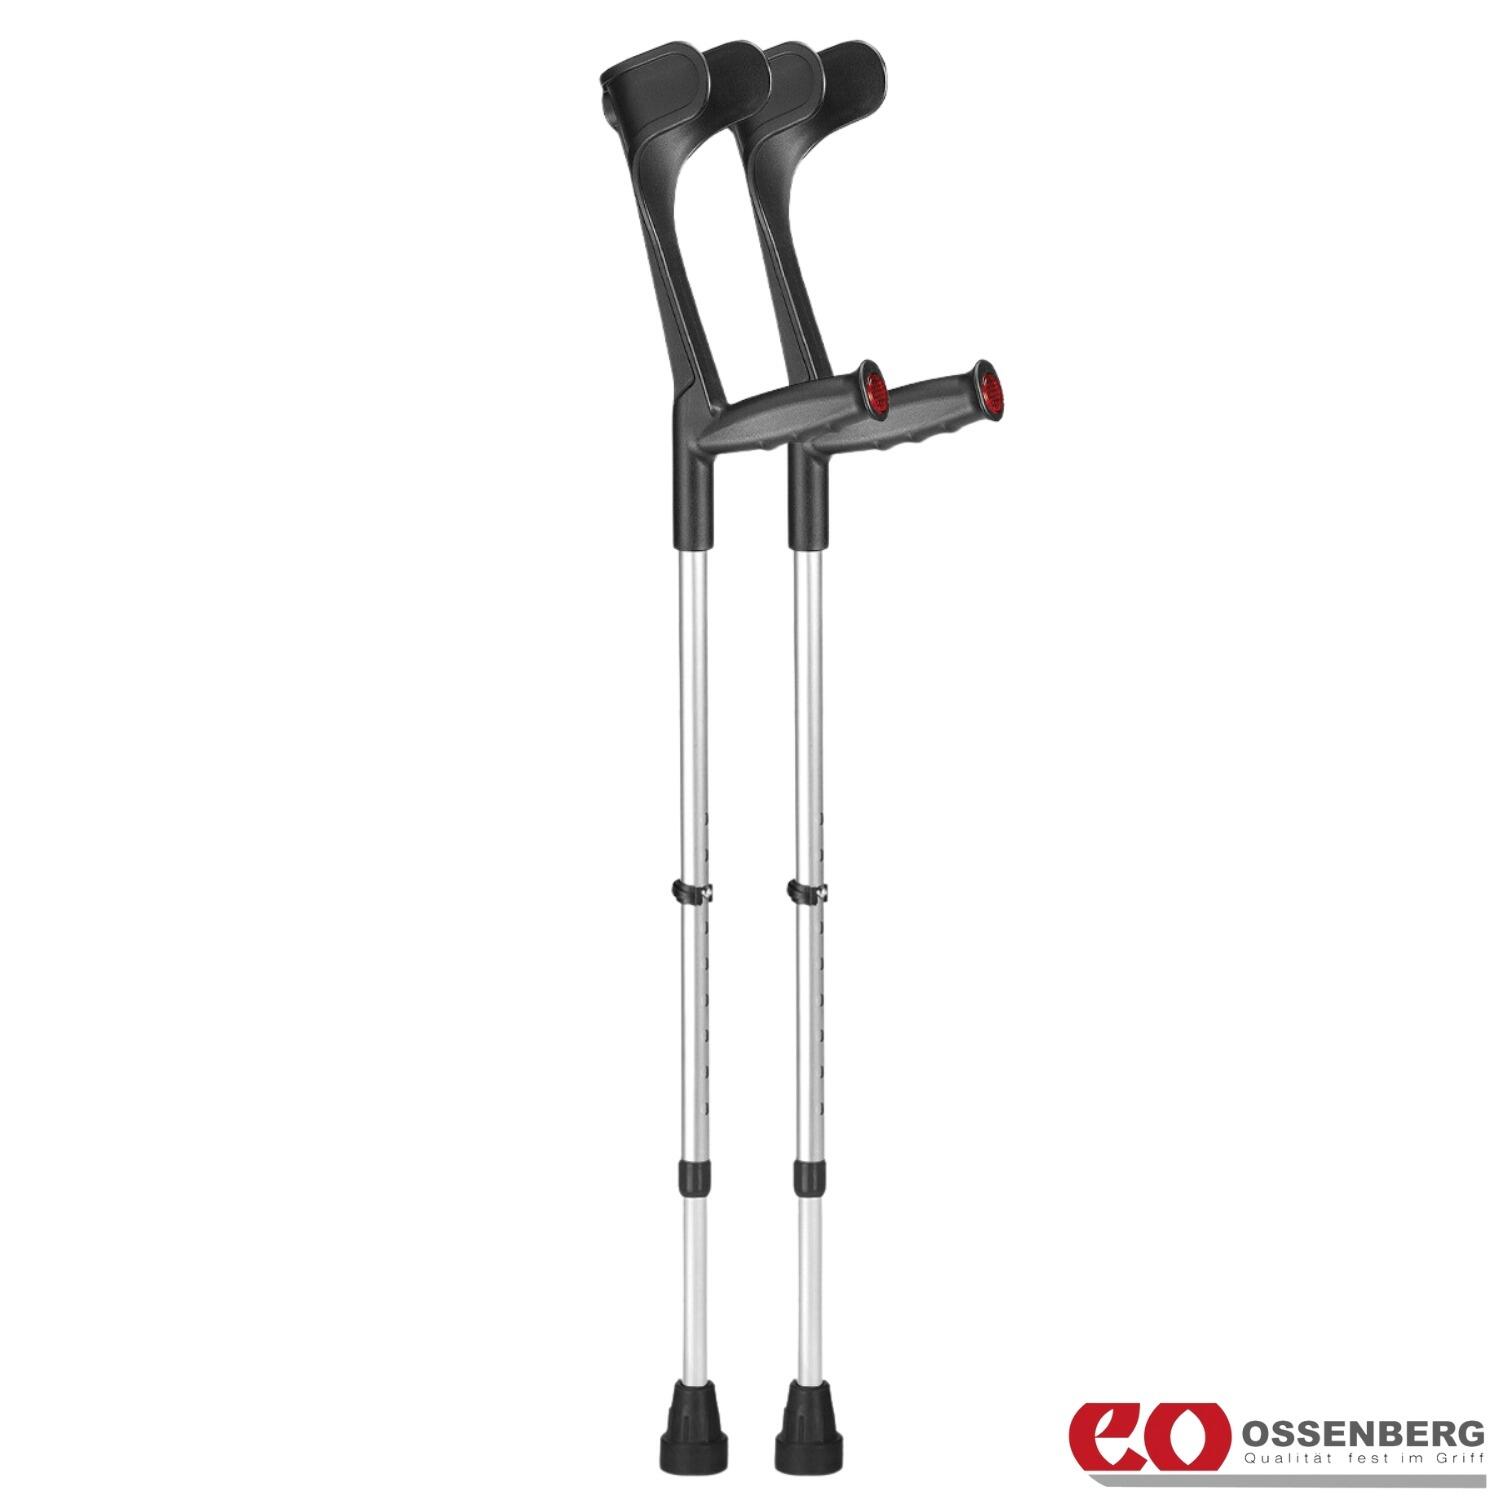 Ossenberg-Classic-Open-Cuff-Crutches-Black